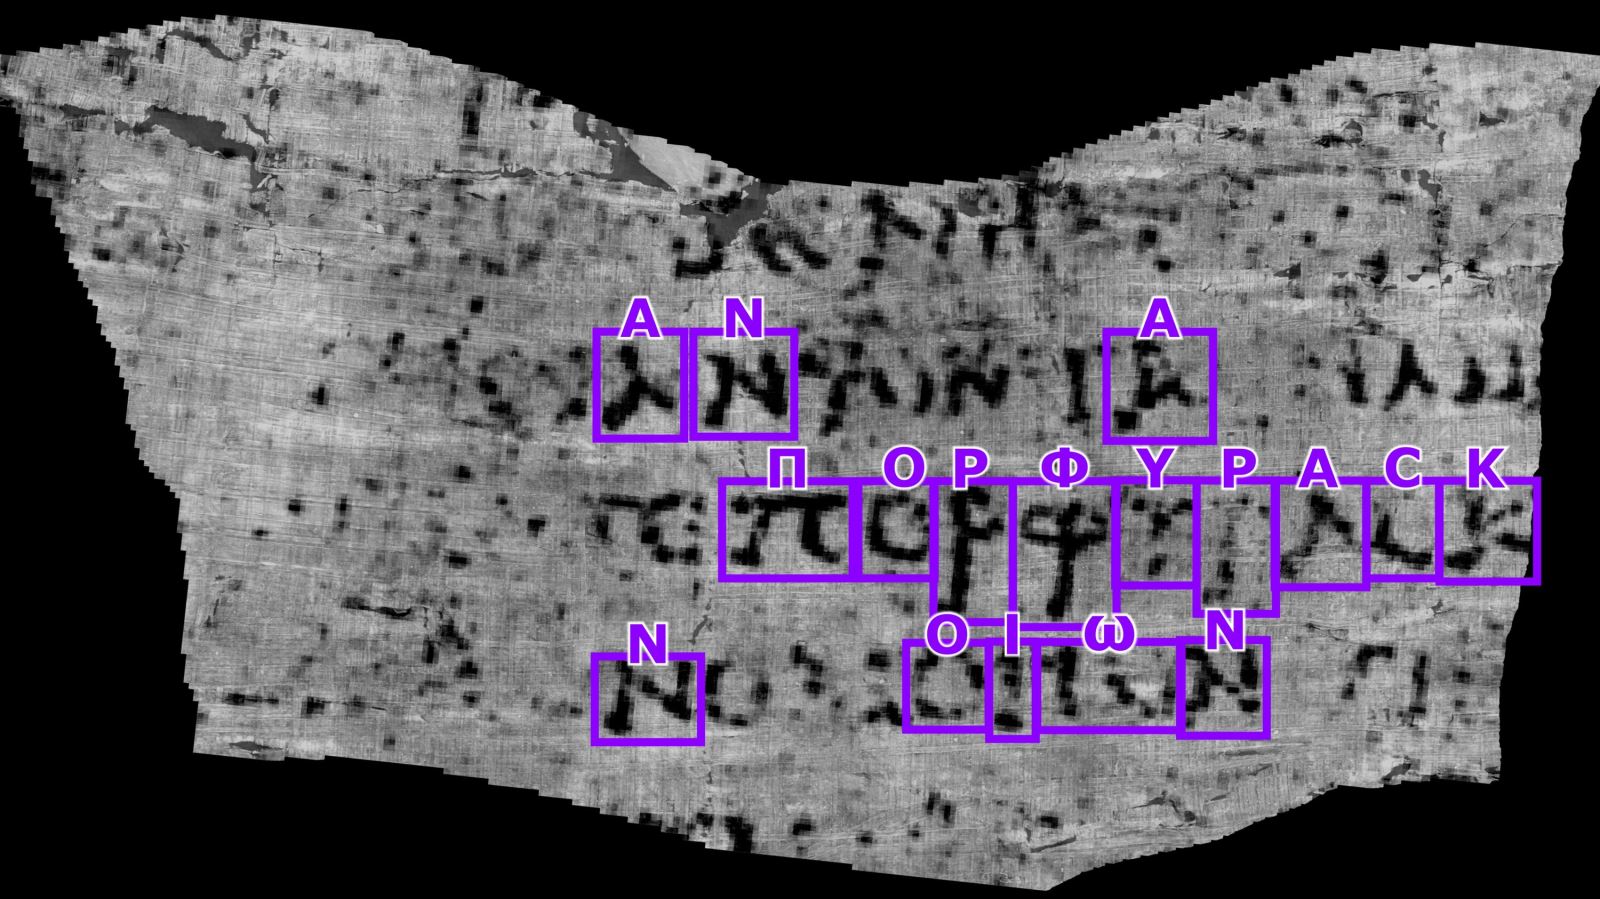 AI giúp giải mã cuộn giấy bị núi lửa chôn vui vào năm 79 sau Công nguyên- Ảnh 3.